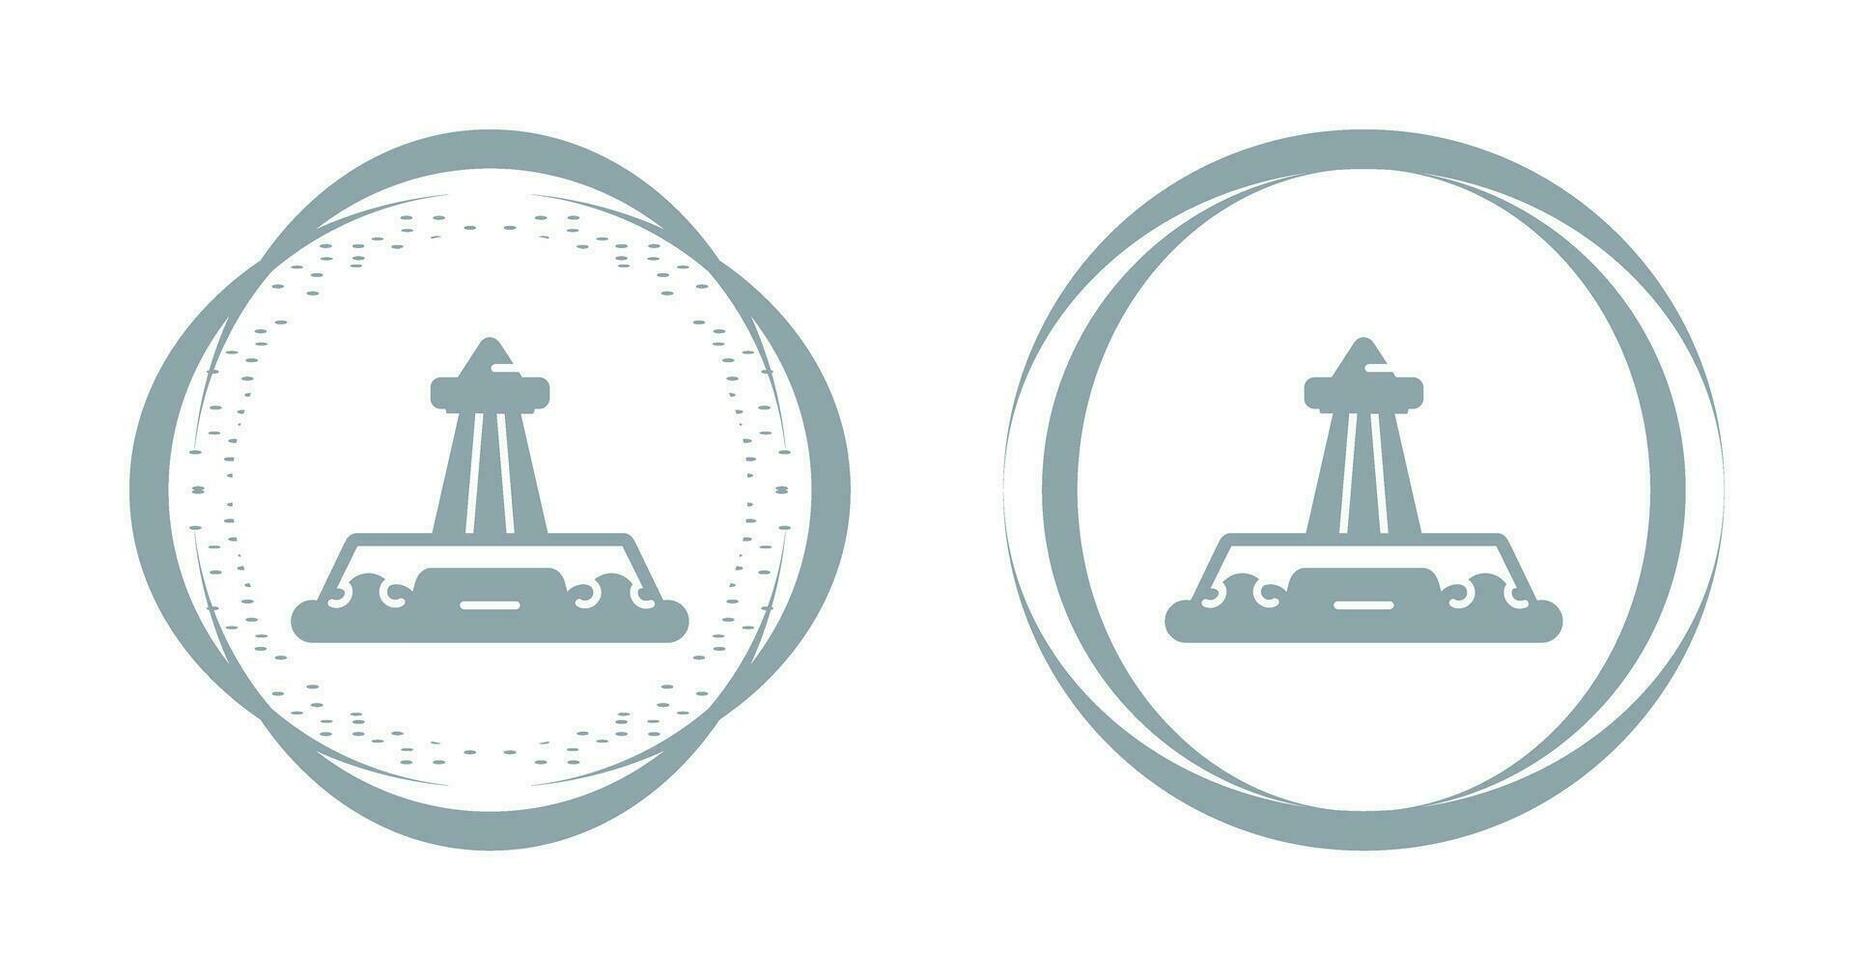 icono de vector de obelisco